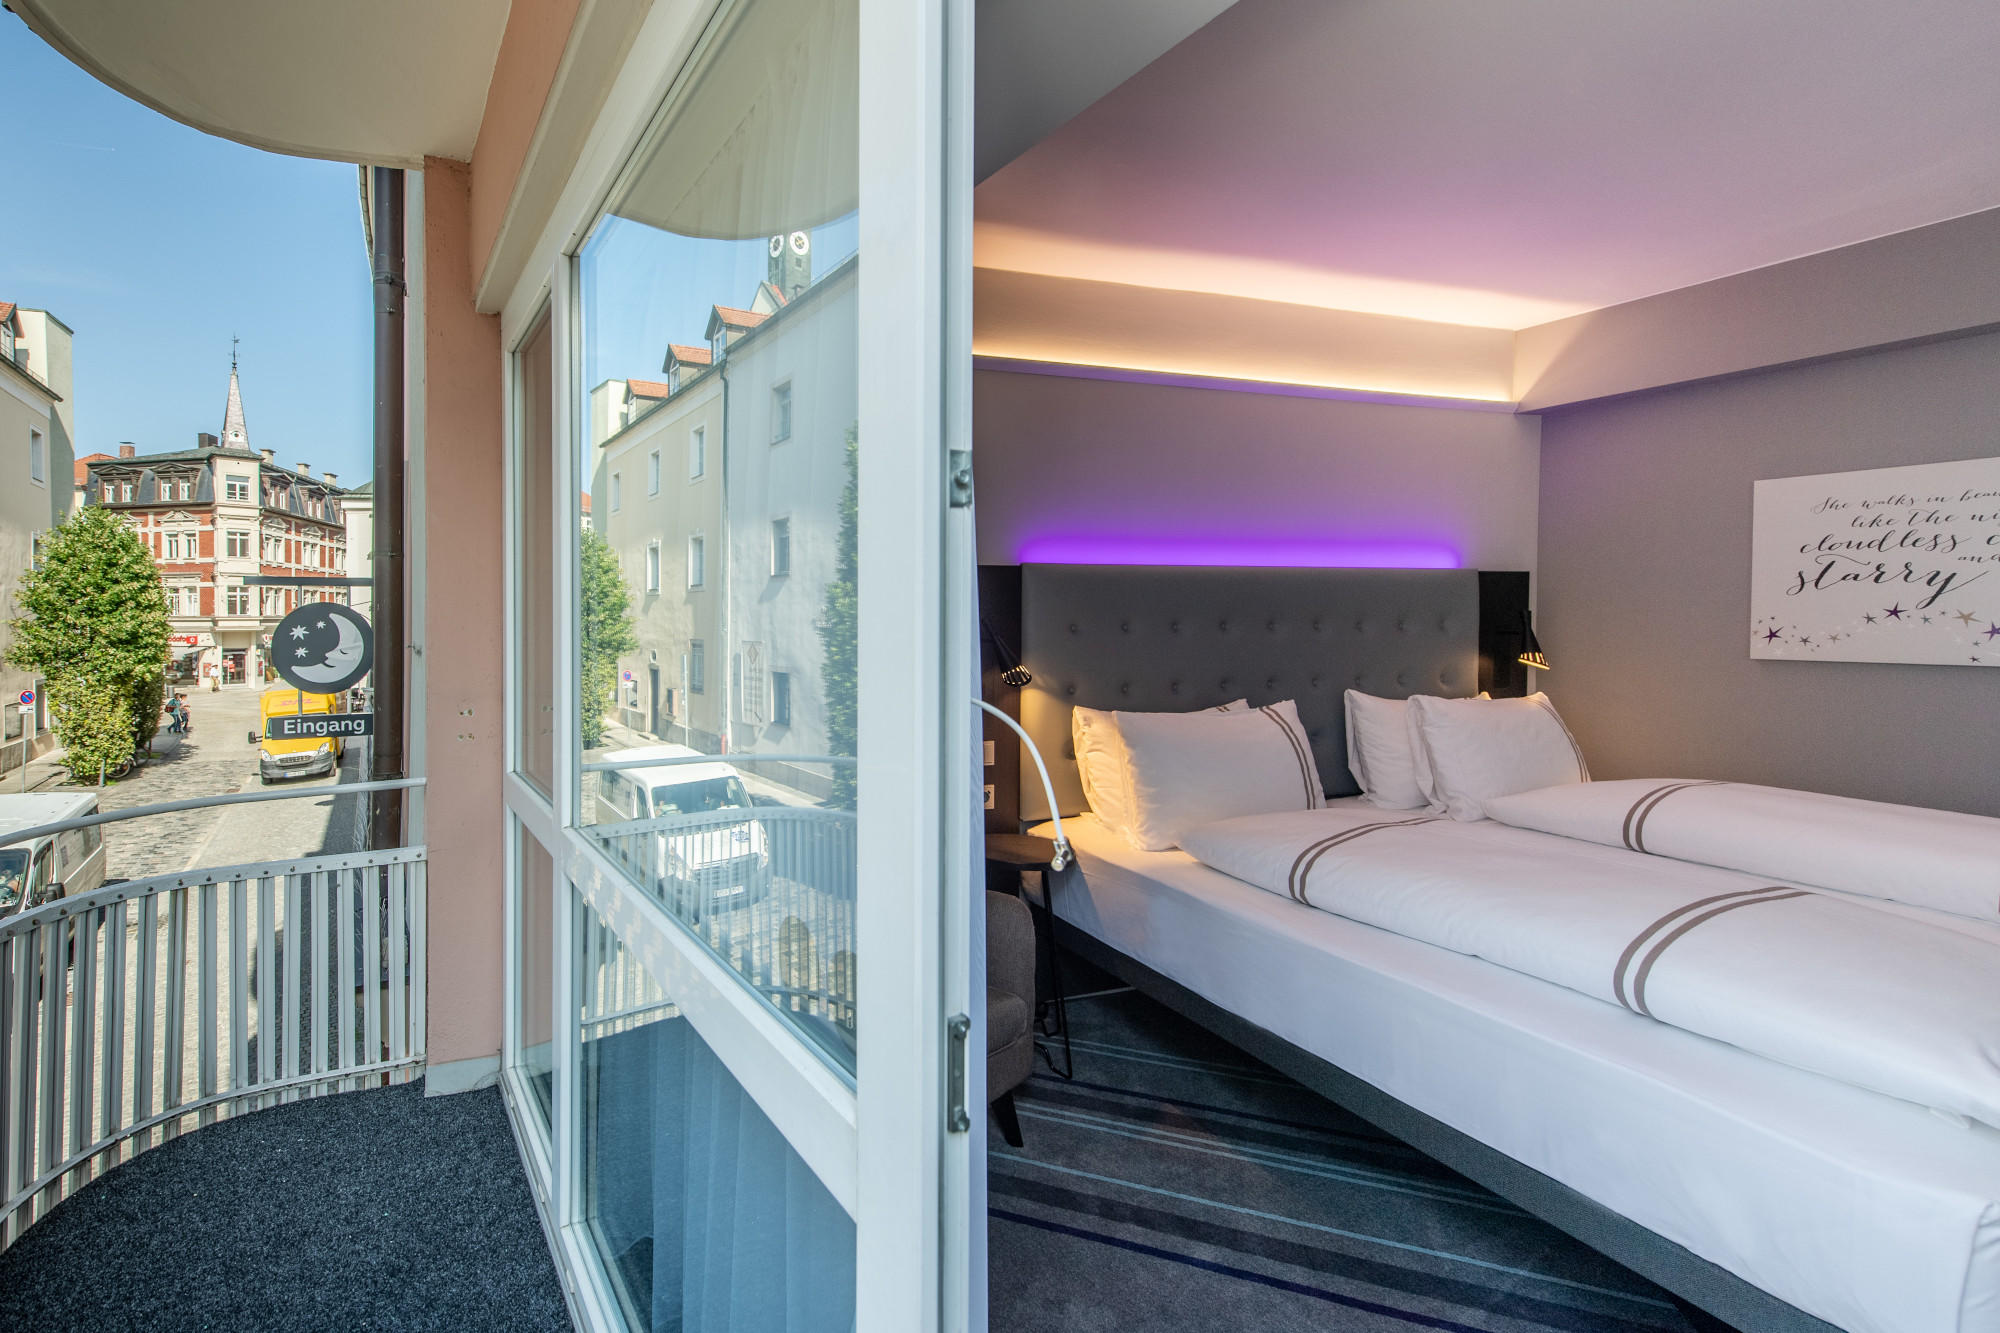 Kundenbild groß 9 Premier Inn Passau Weisser Hase hotel